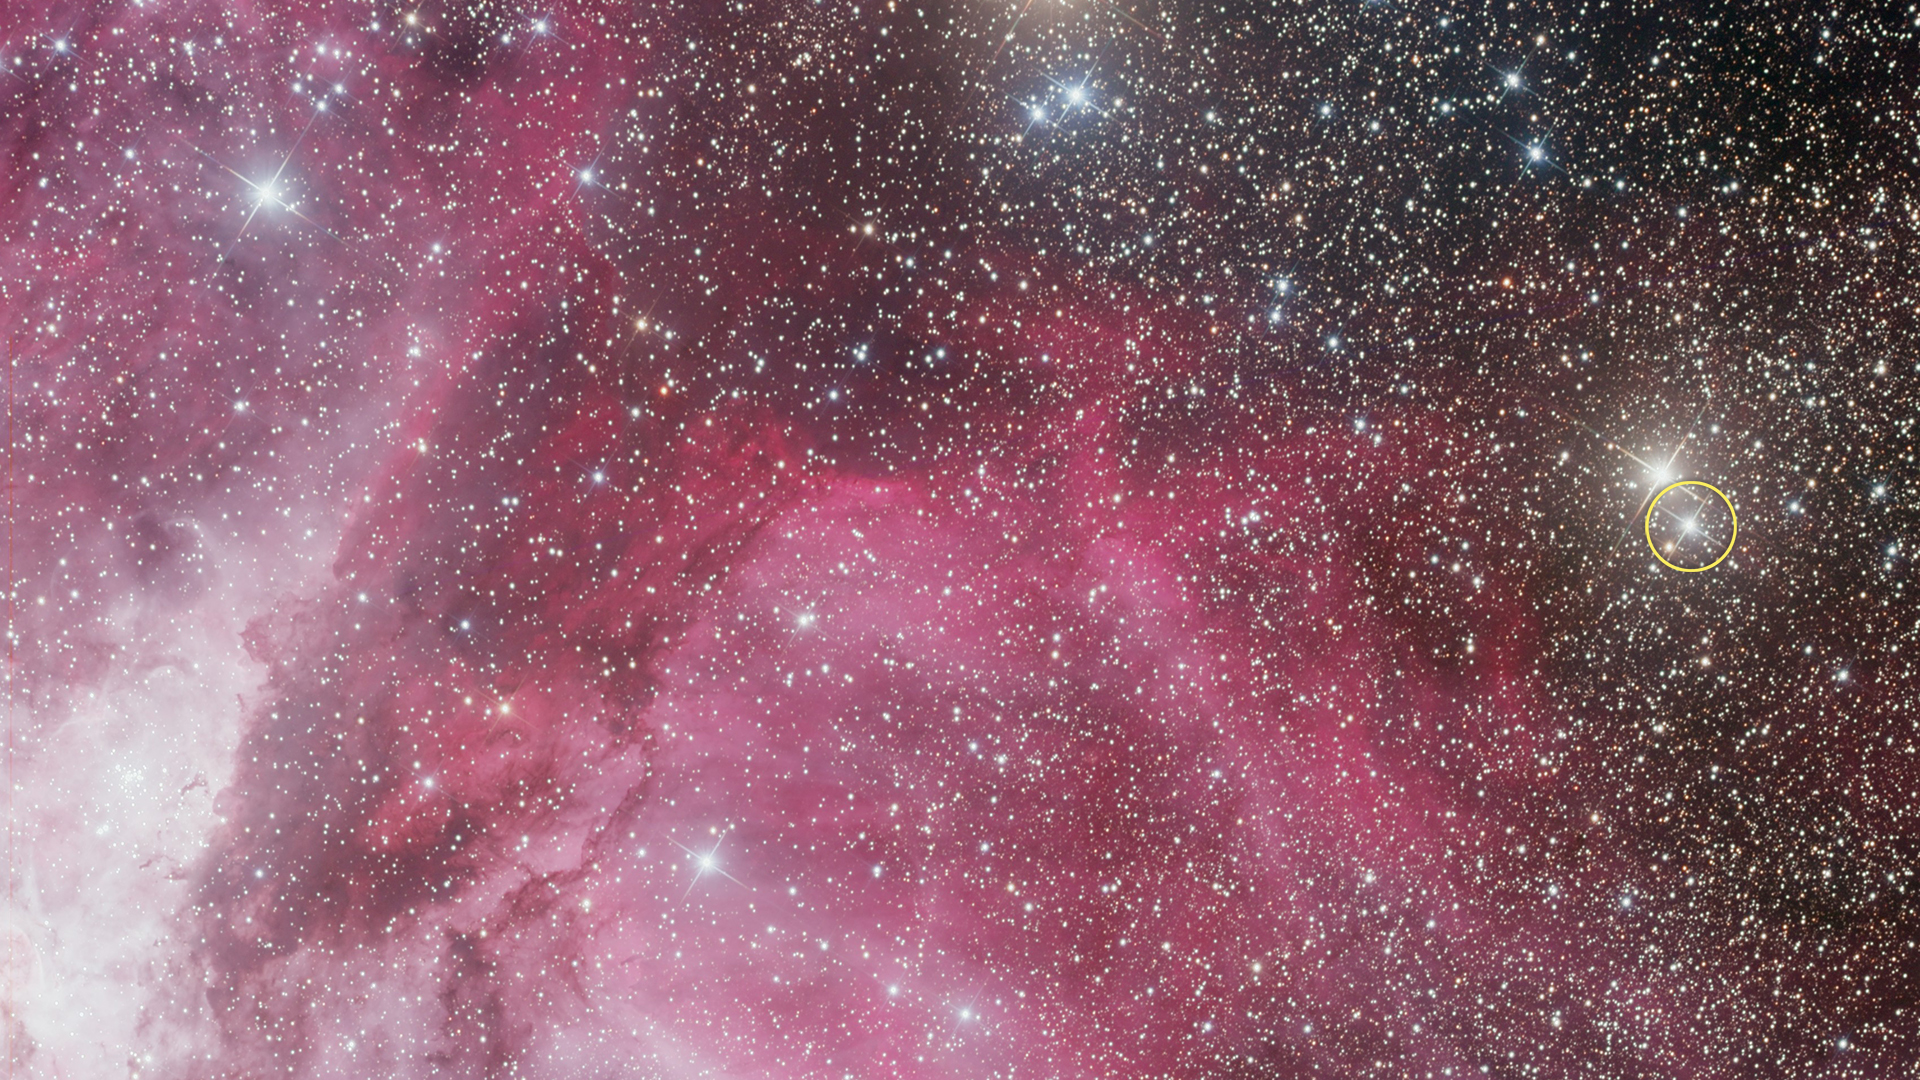 Carina Nebula and Nova 